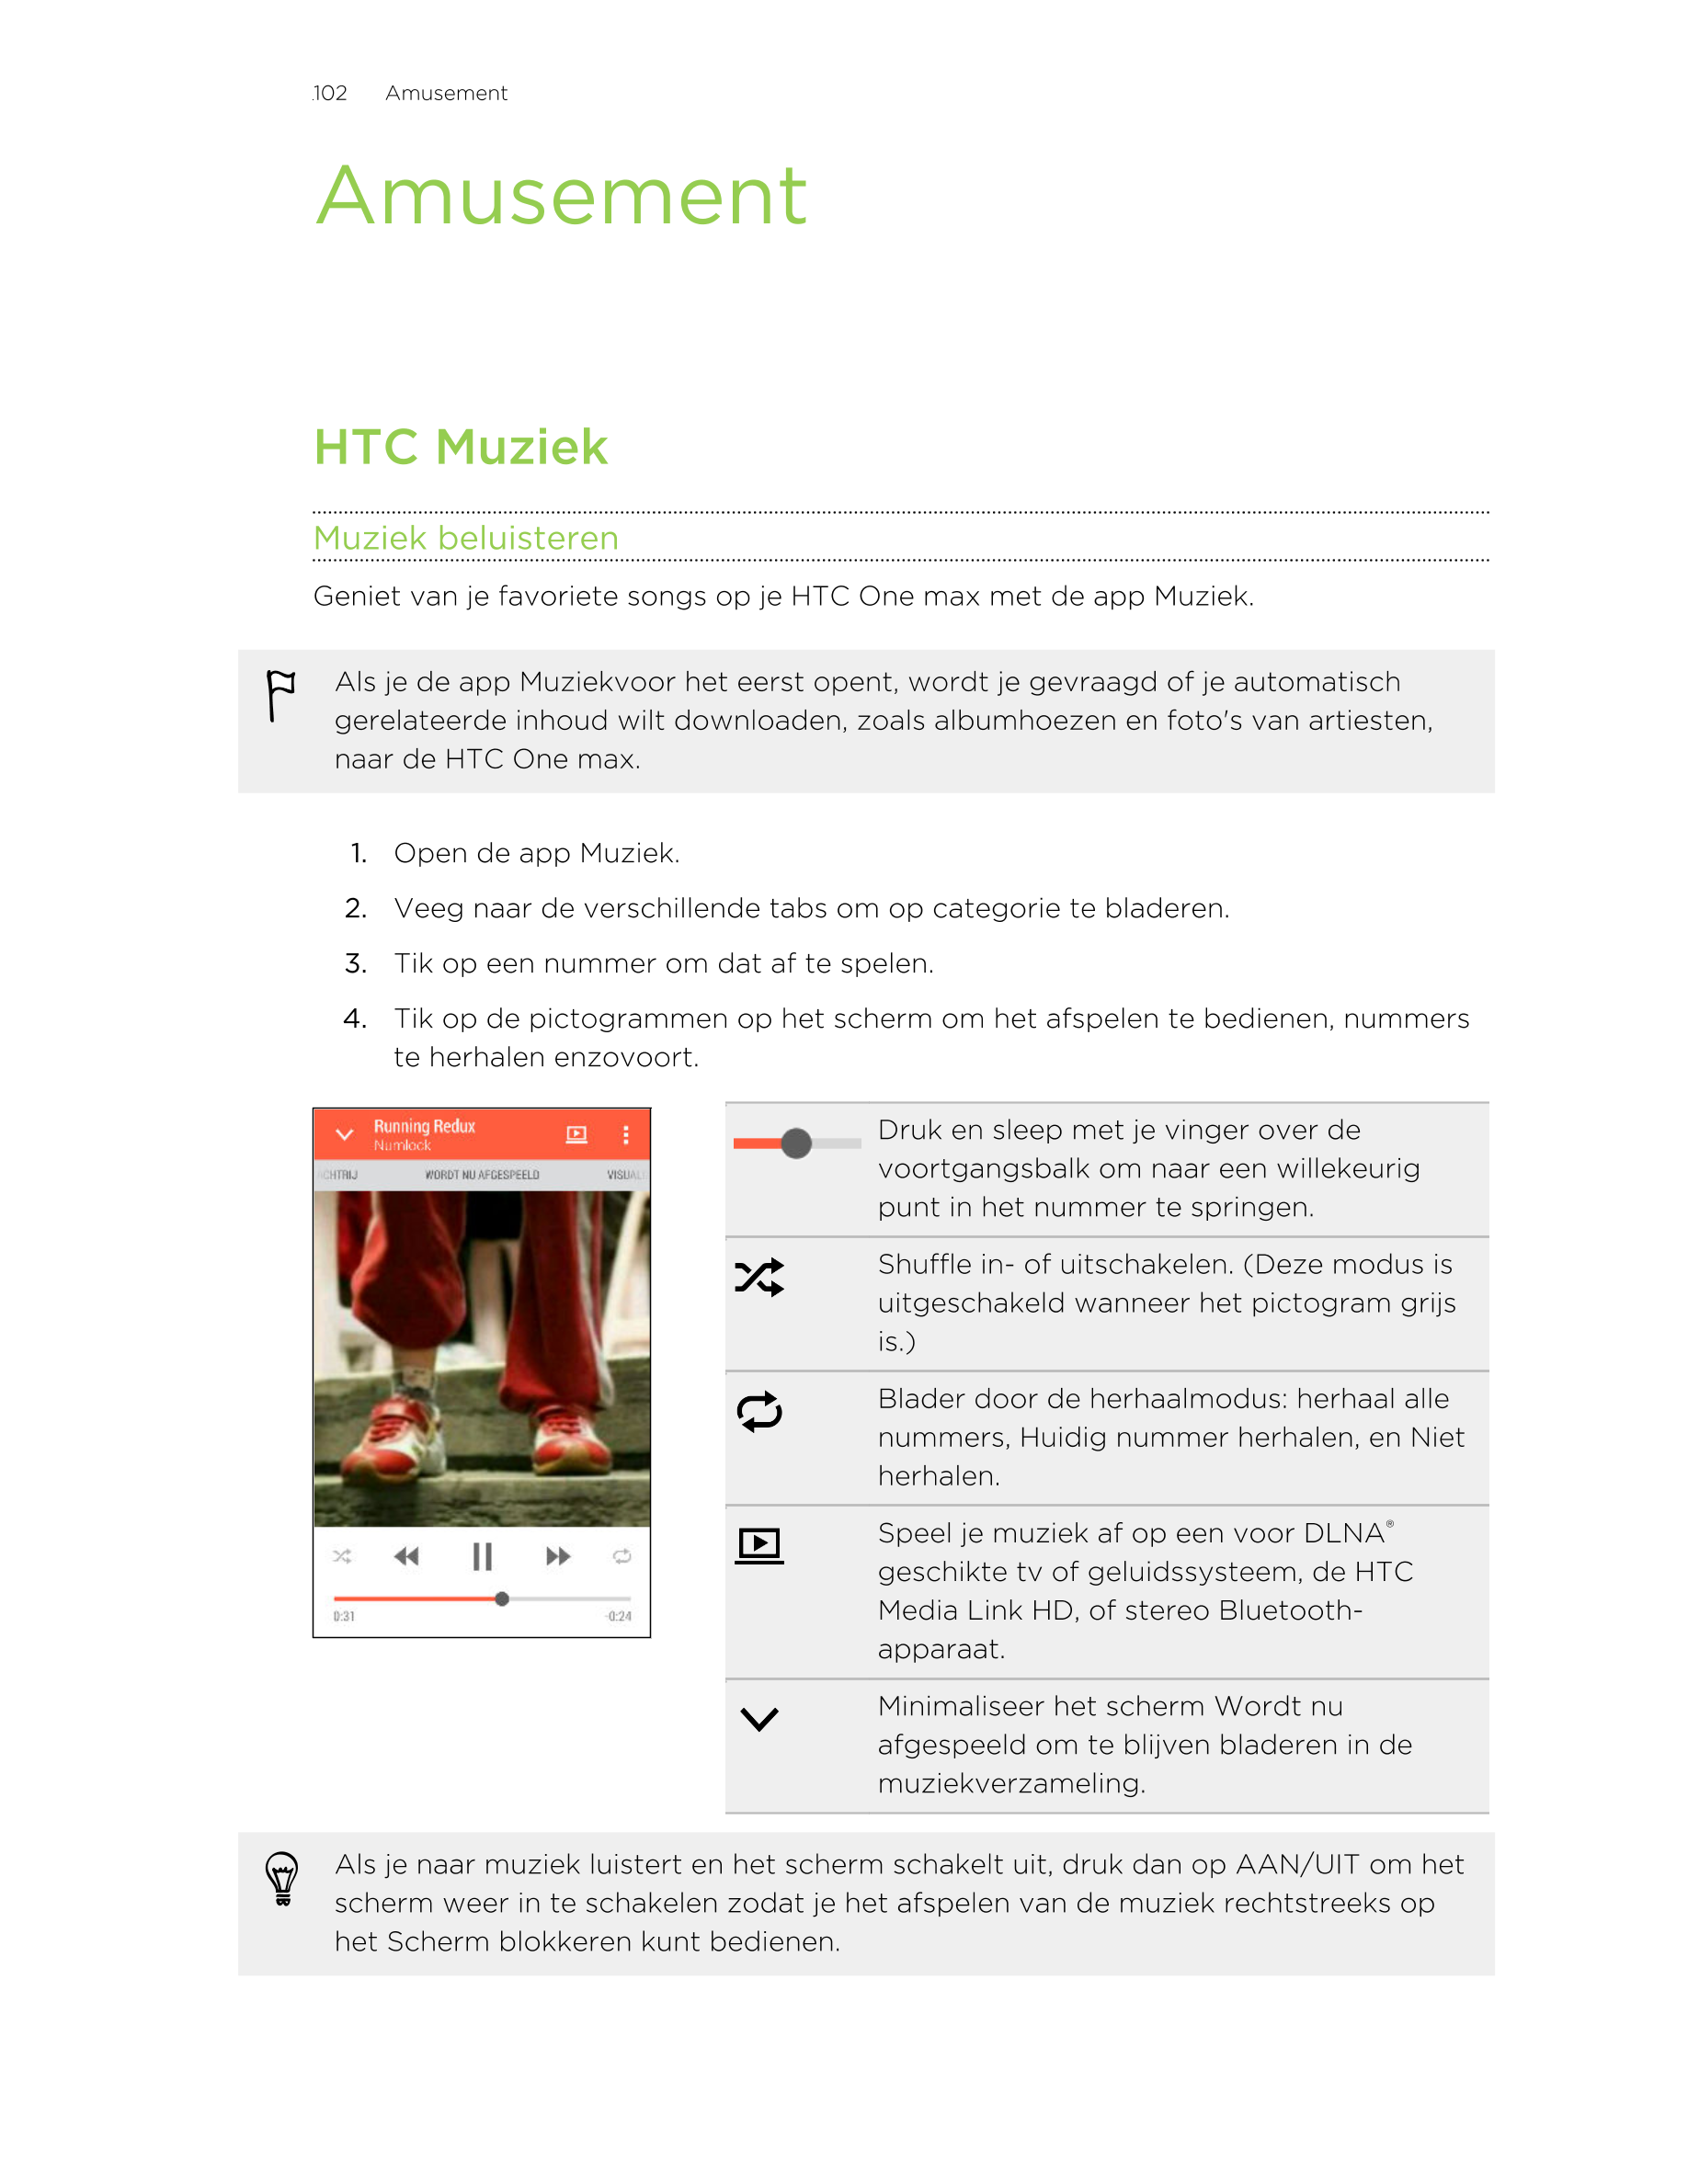 102      Amusement
Amusement
HTC Muziek
Muziek beluisteren
Geniet van je favoriete songs op je HTC One max met de app Muziek.
Al